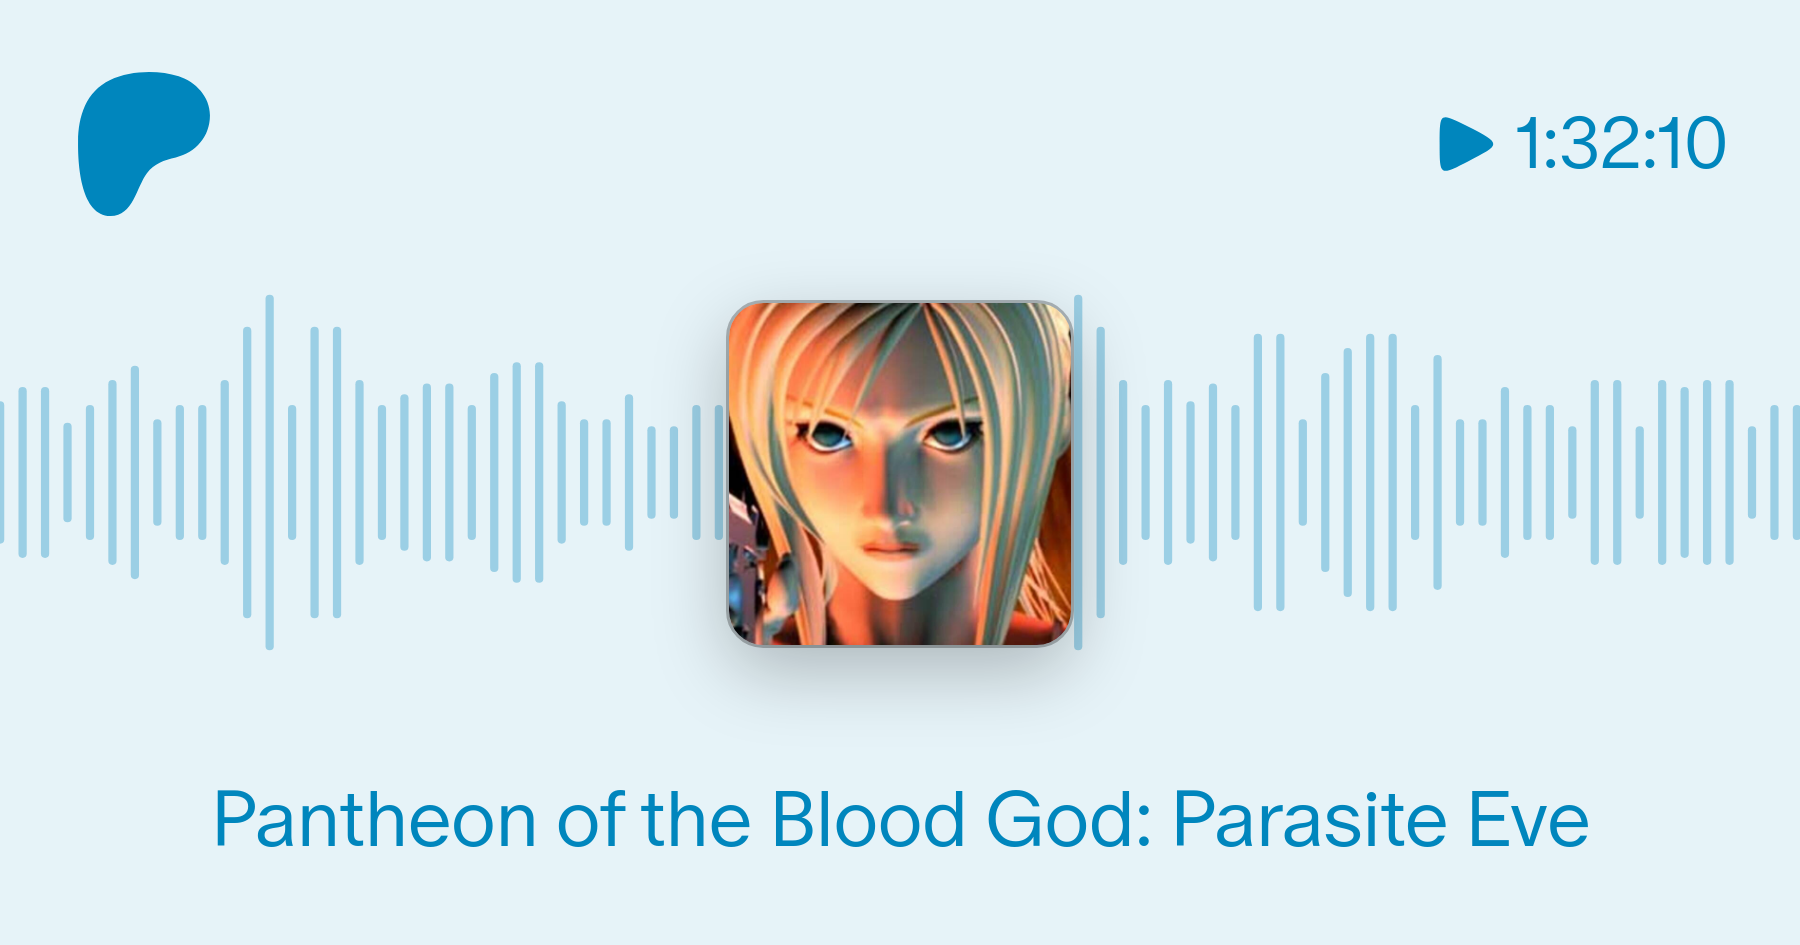 Pantheon of the Blood God: Parasite Eve